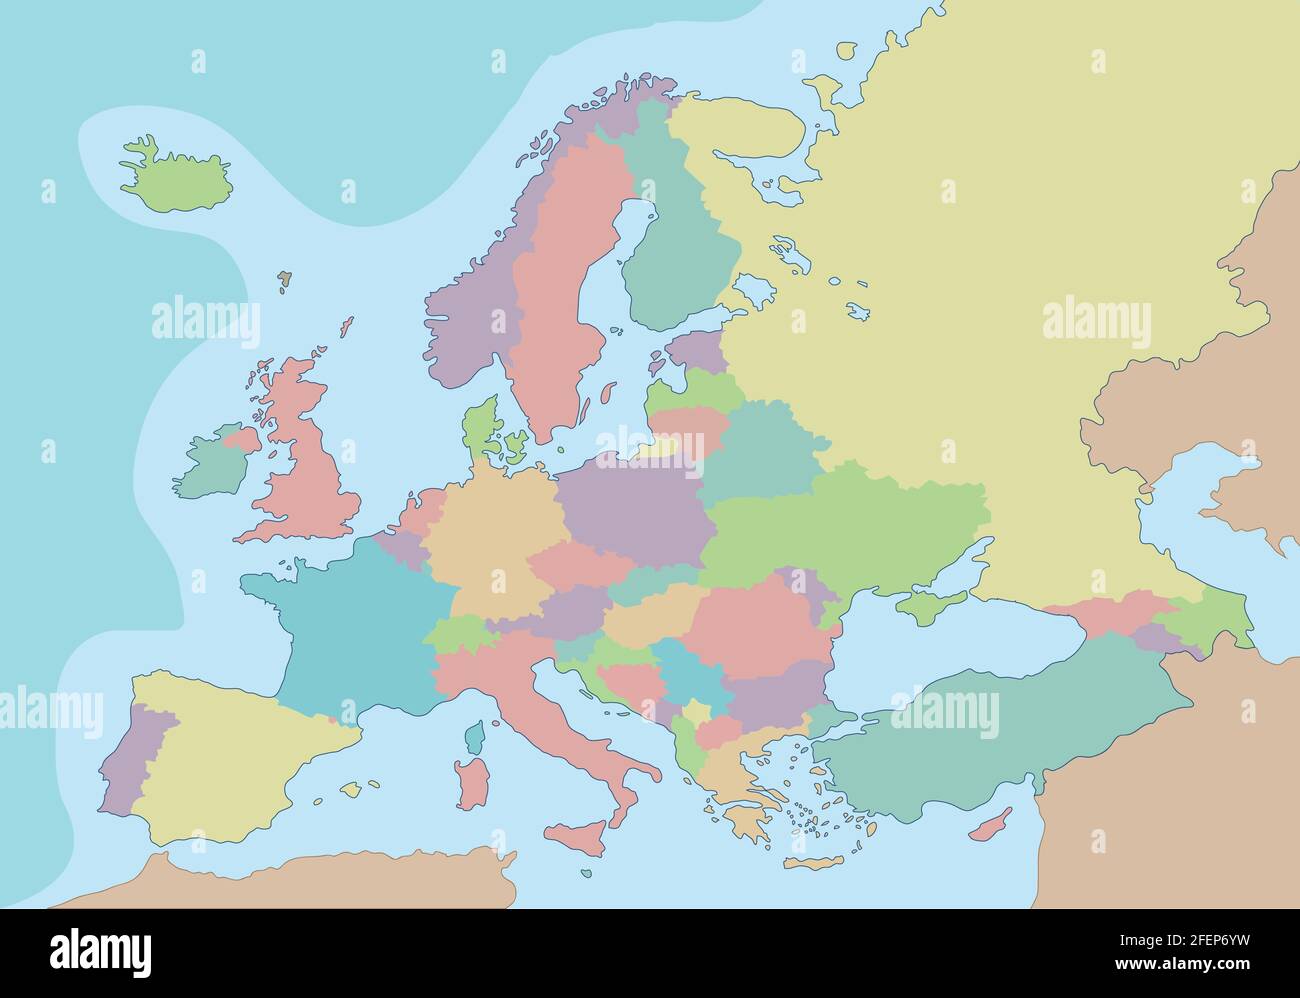 Mappa politica dell'Europa con colori diversi per ogni paese. Illustrazione vettoriale. Illustrazione Vettoriale